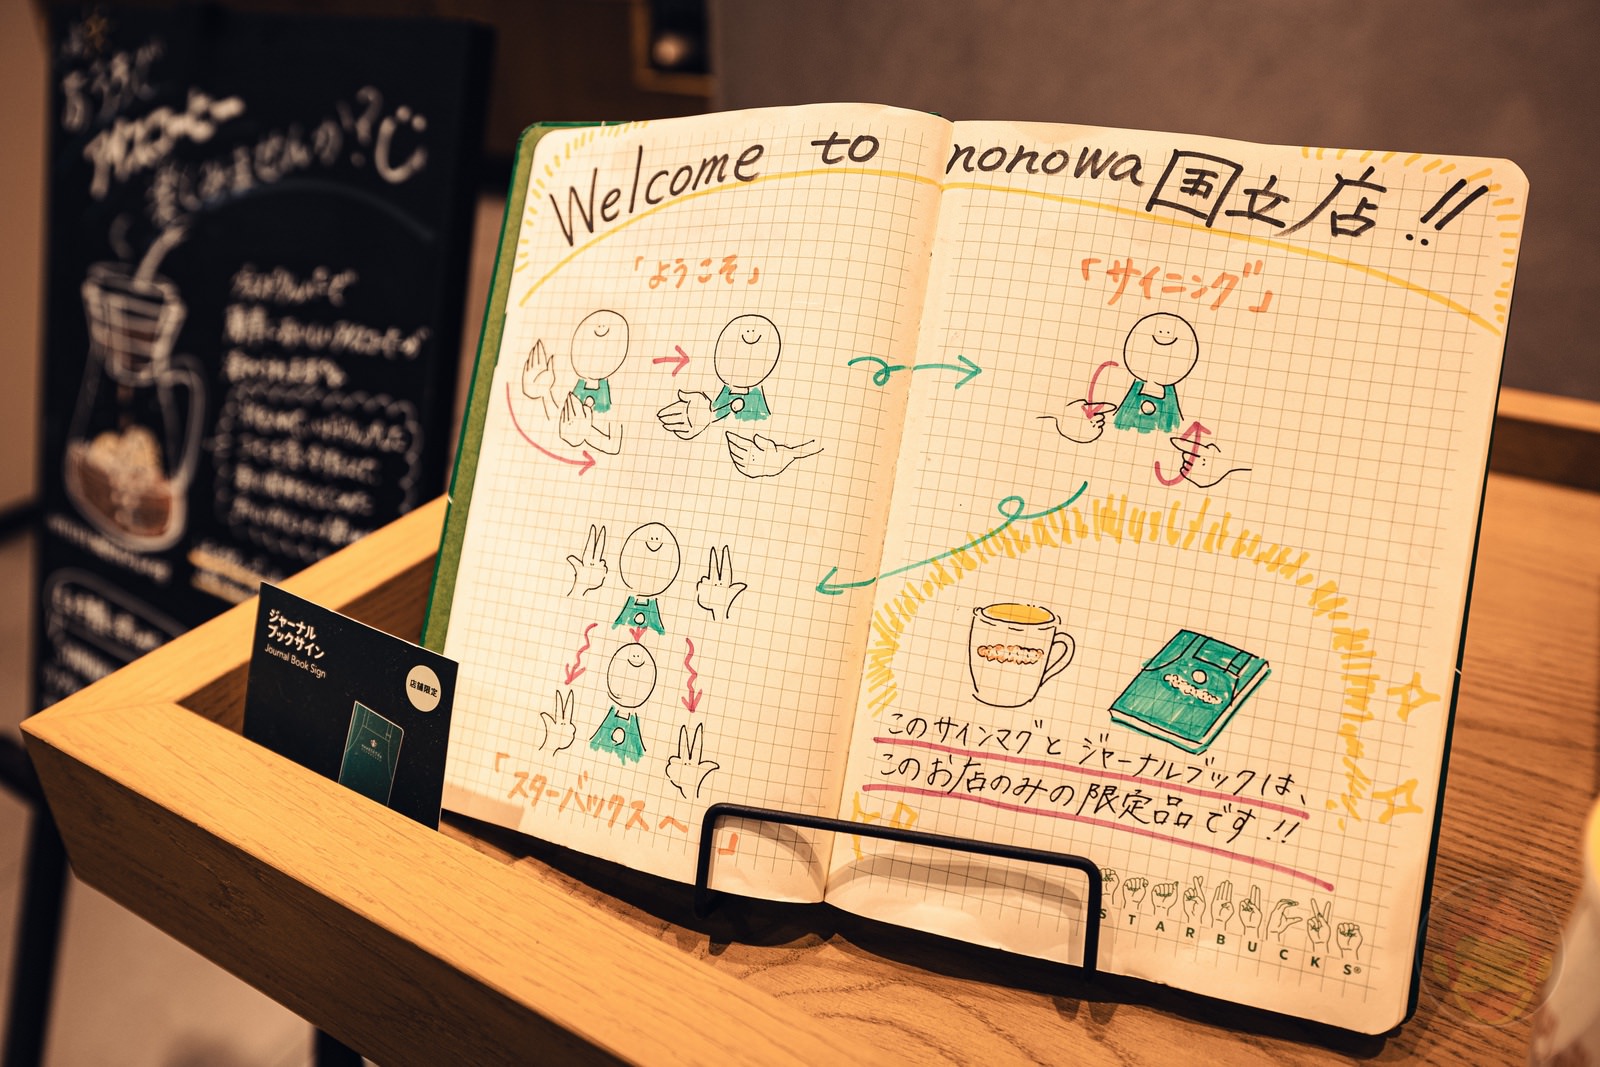 Sign-Language-Starbucks-in-japan-10.jpg